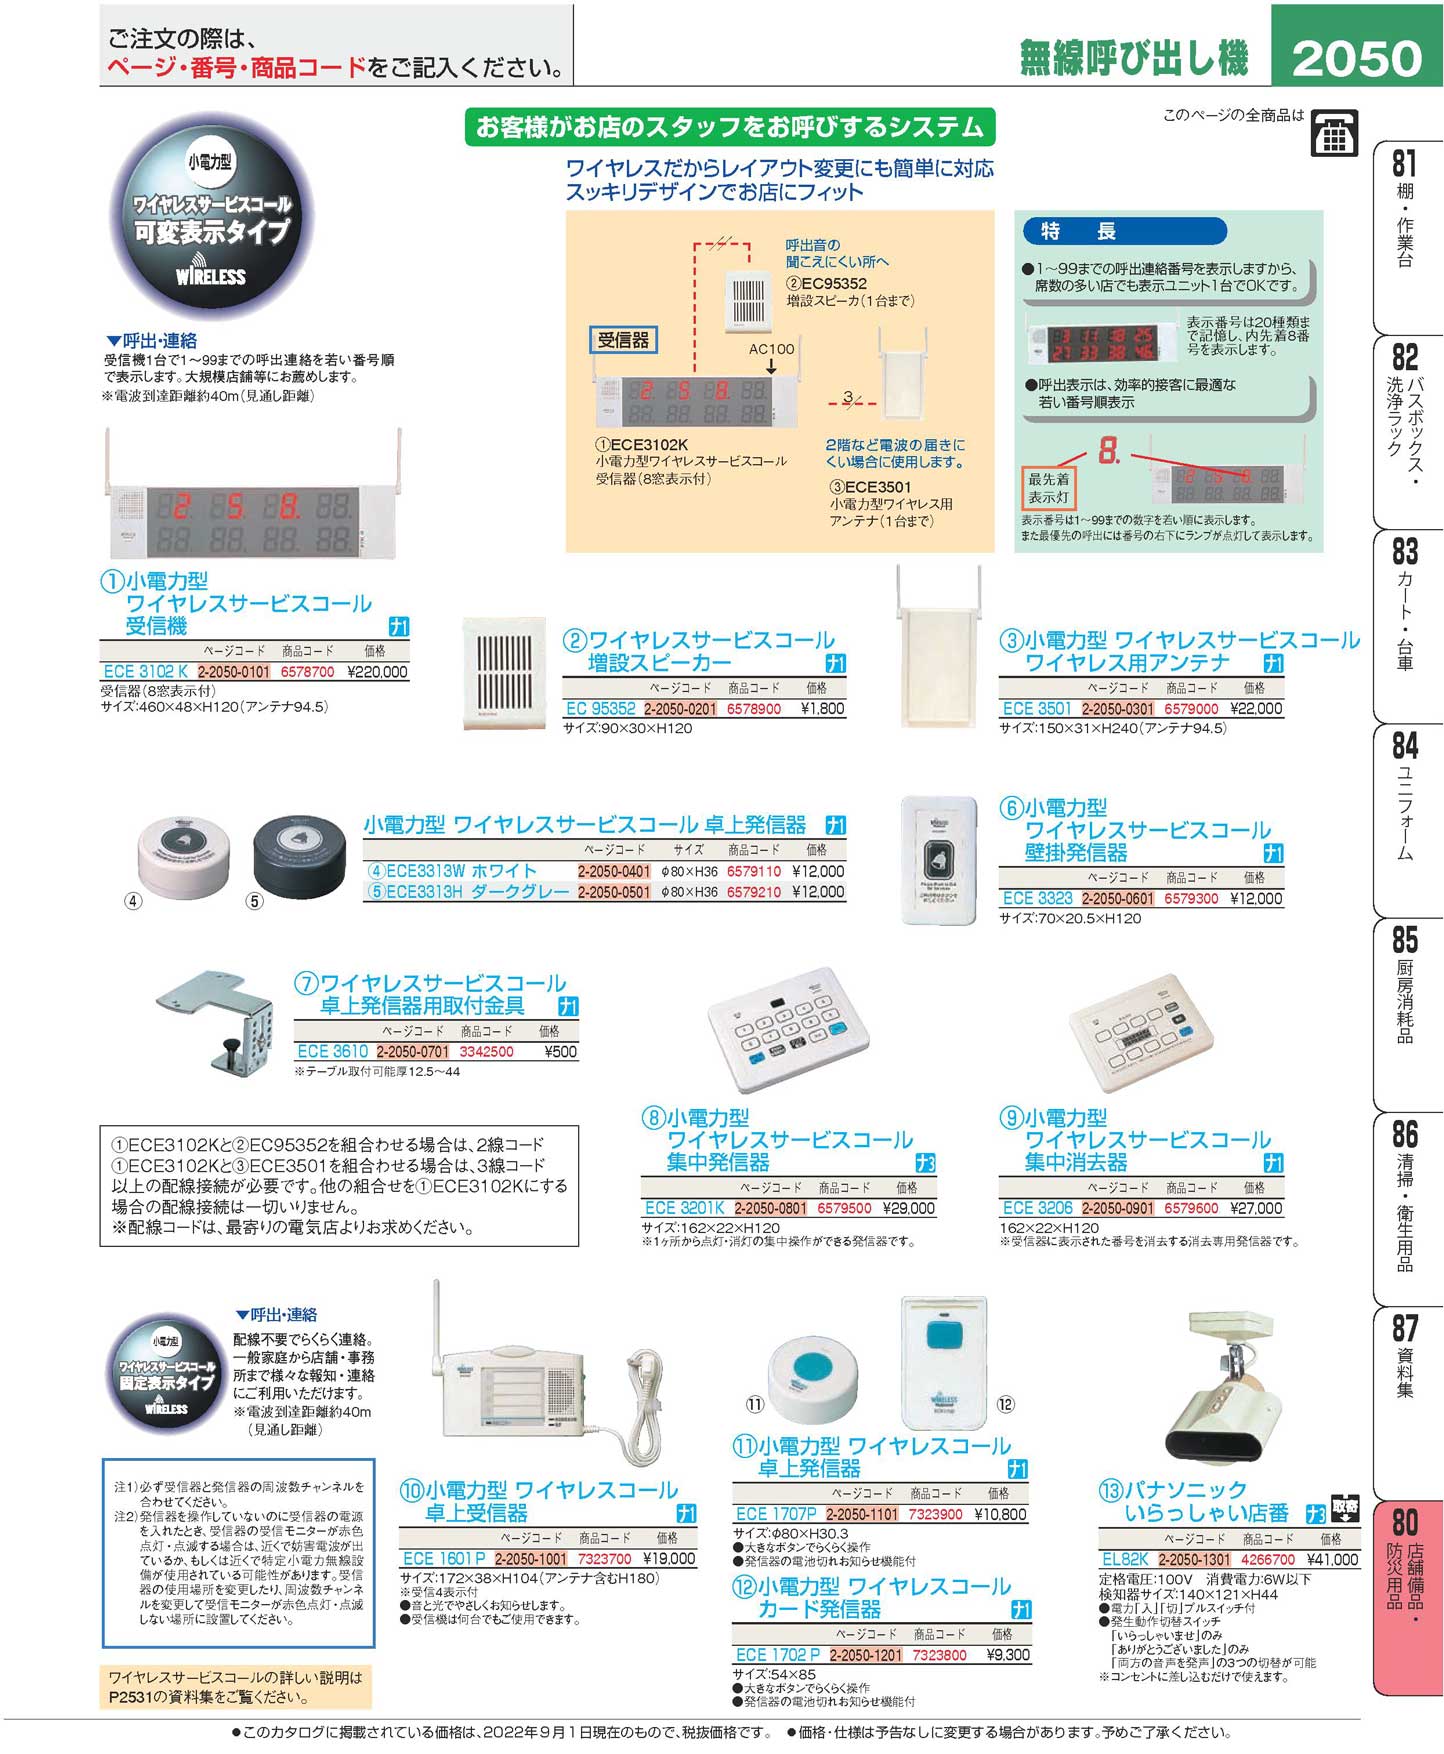 サービスコ Panasonic/パナソニック 小電力型ワイヤレスサービスコール集中発信器 ECE3201K murauchi.co.jp